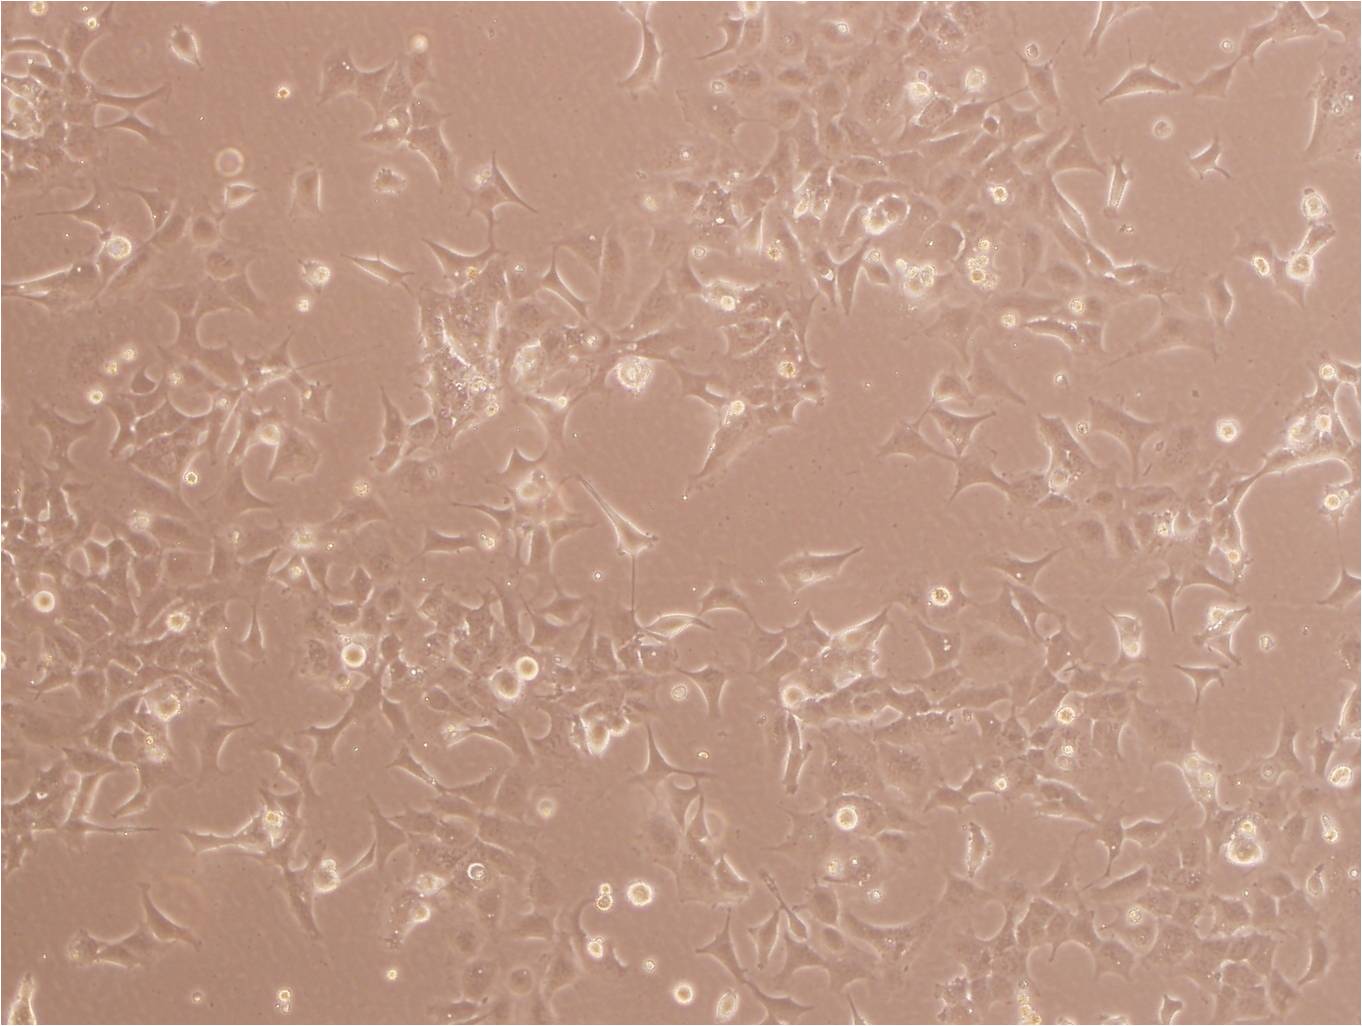 CC-LP-1 Cells|人胆管癌可传代细胞系